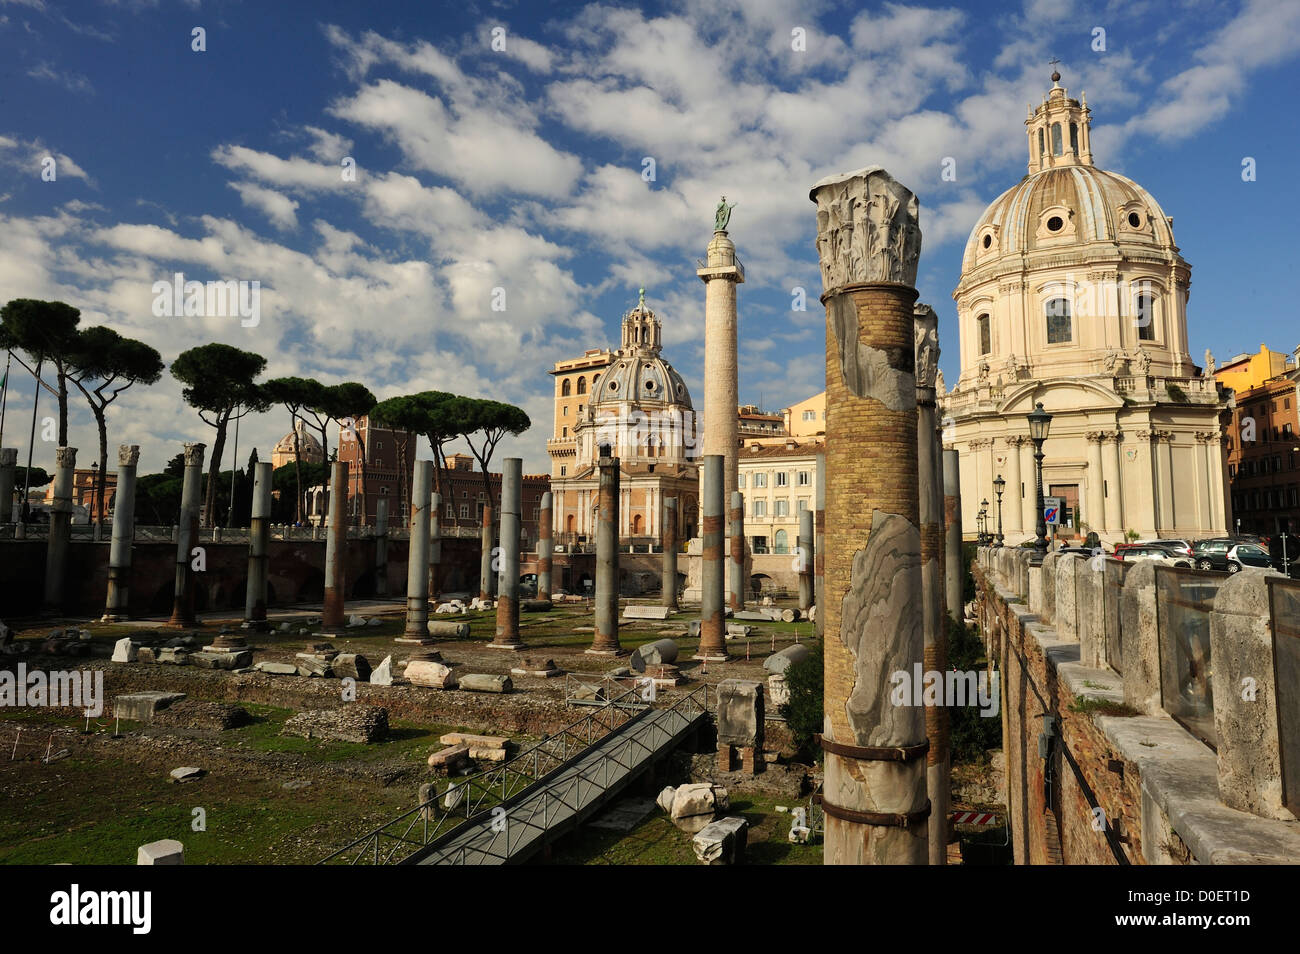 Das Forum des Trajan, die größte der Kaiserforen in Rom, Italien Stockfoto